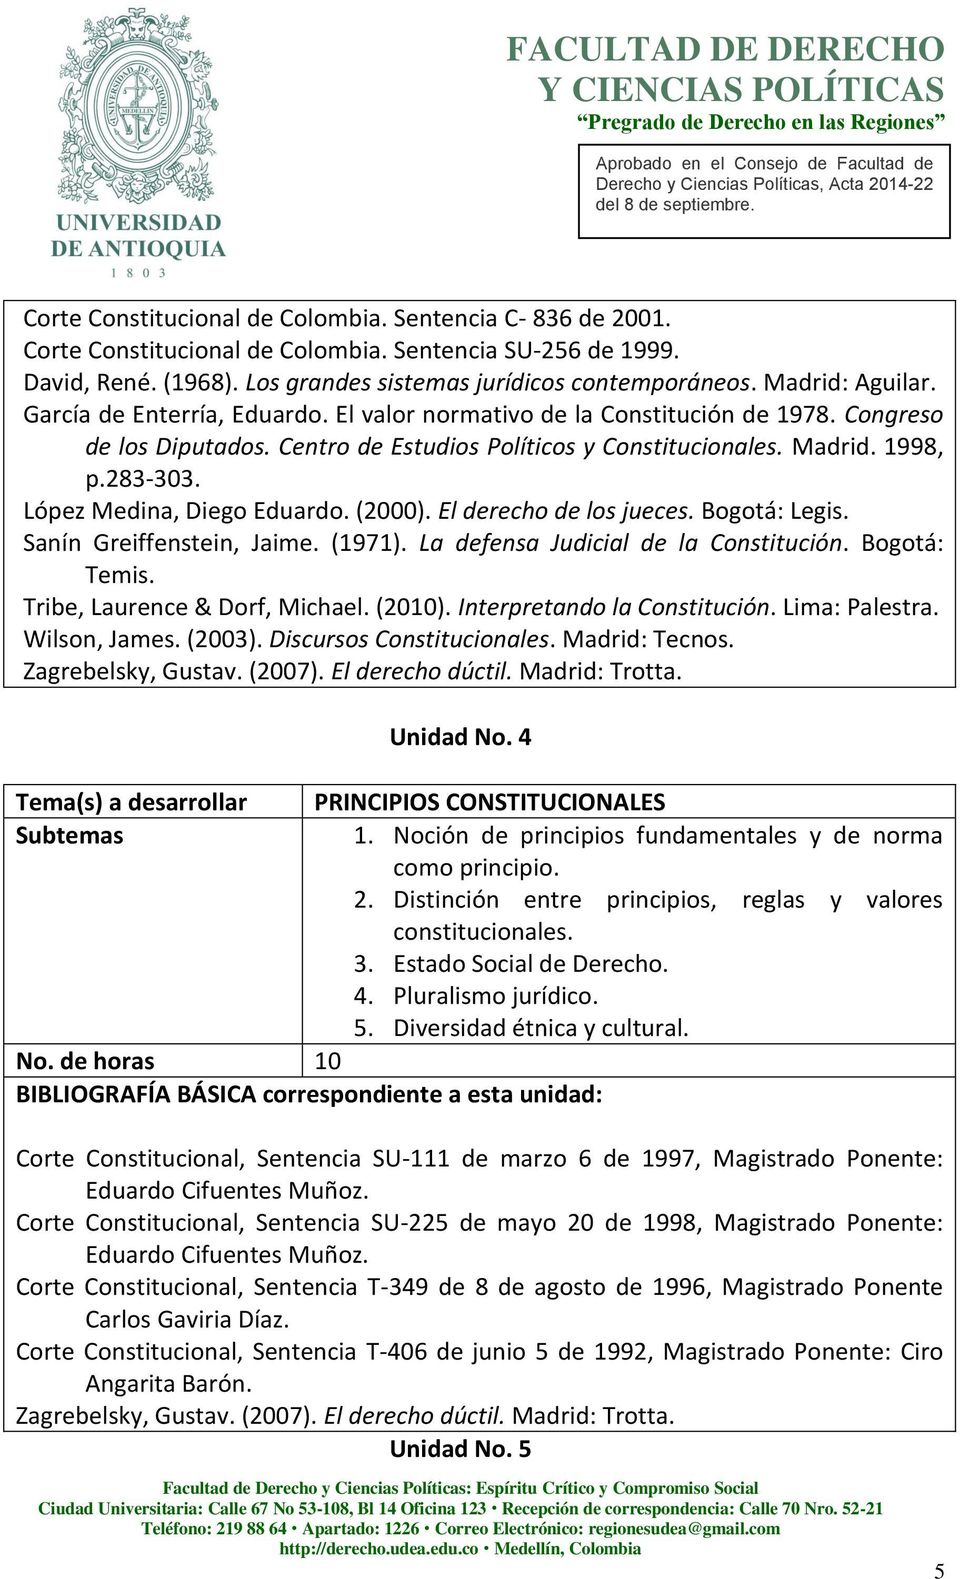 López Medina, Diego Eduardo. (2000). El derecho de los jueces. Bogotá: Legis. Sanín Greiffenstein, Jaime. (1971). La defensa Judicial de la Constitución. Bogotá: Temis.